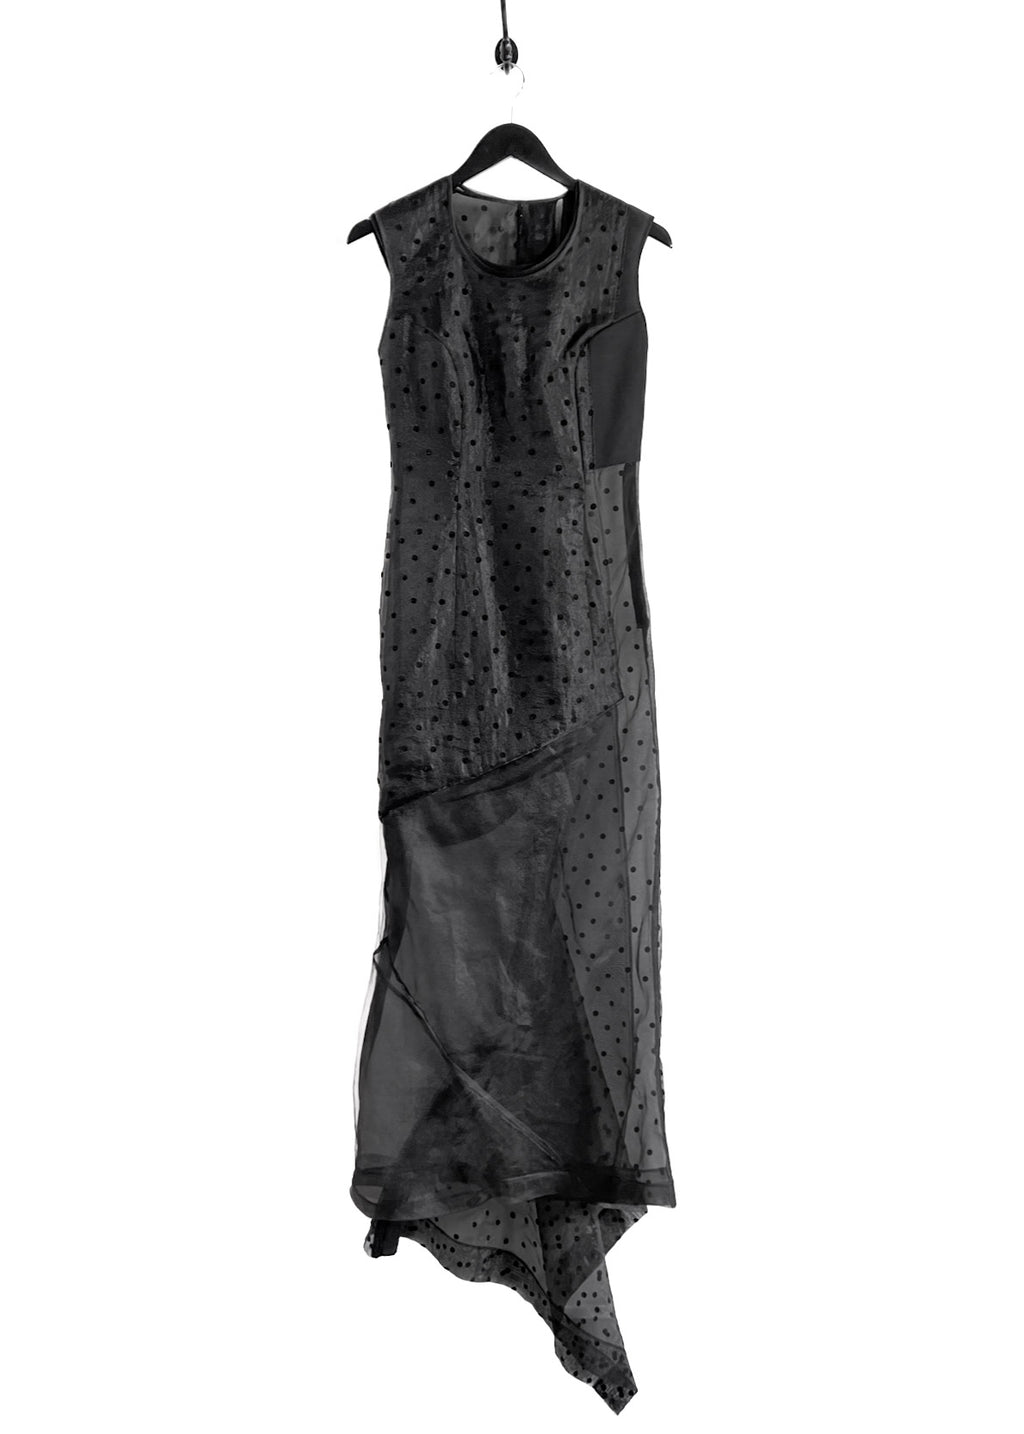 Comme Des Garçons Vintage 1997 Black Polka Dot Panel Sheer Dress